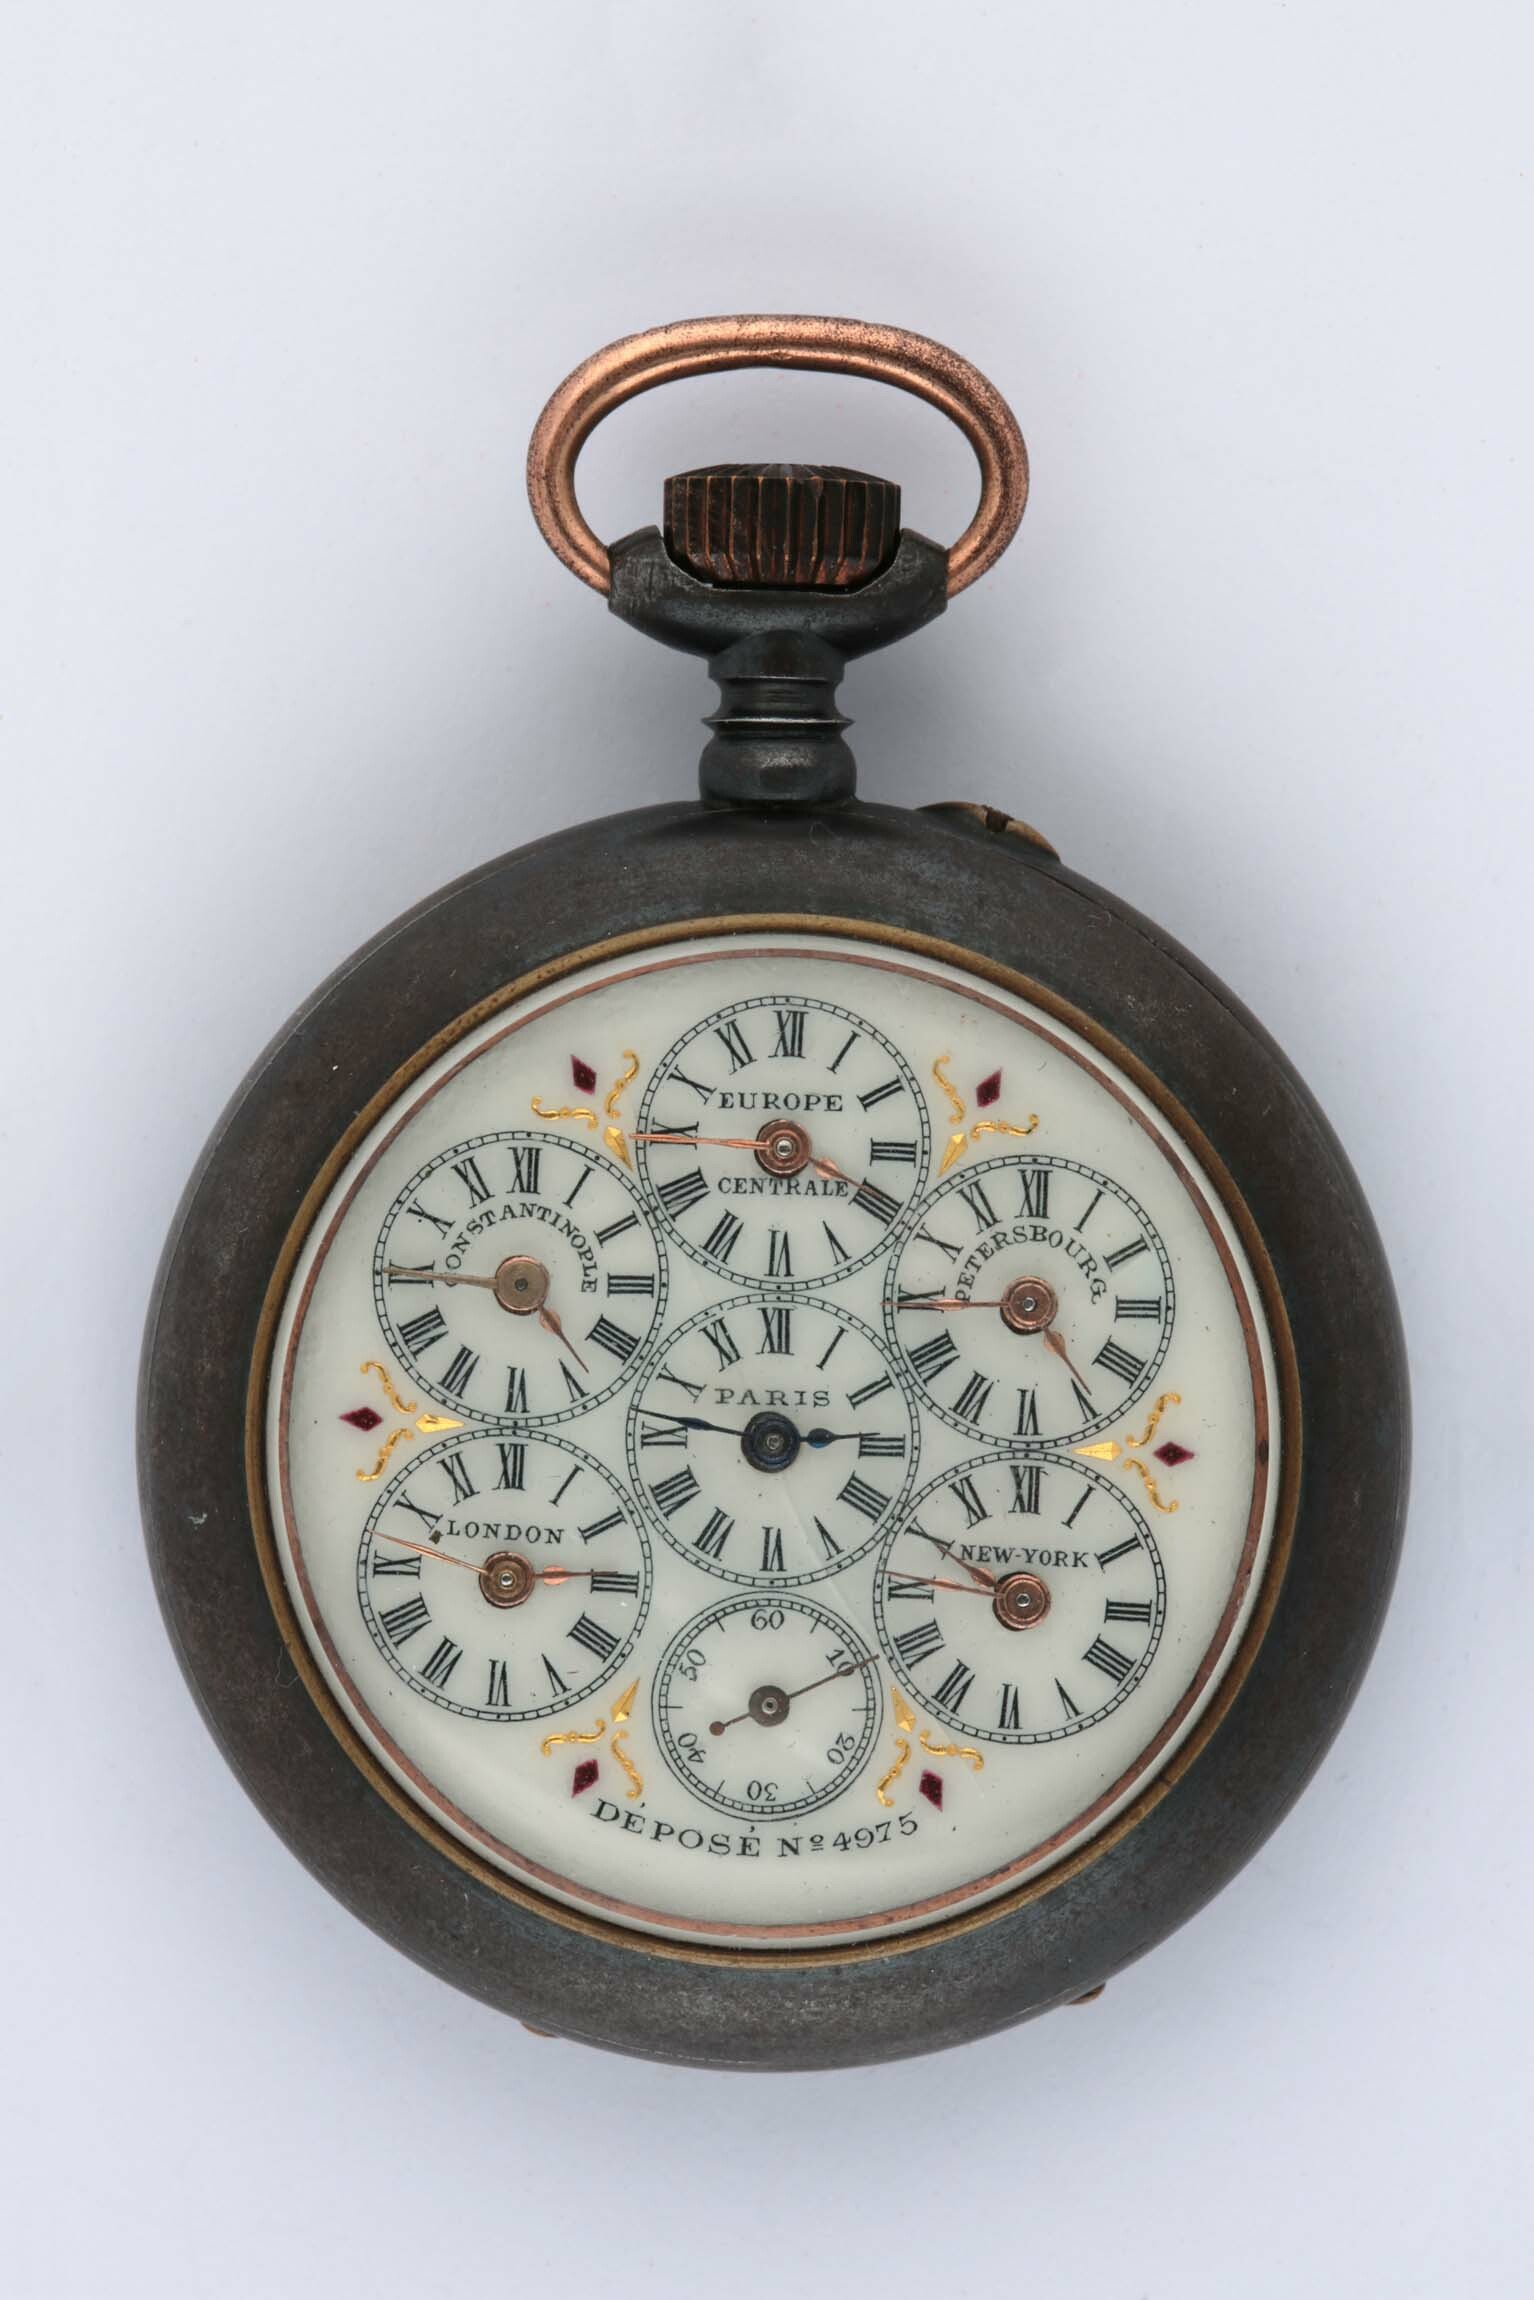 Taschenuhr, Sandoz-Boucherin, La Chaux-de-Fonds (CH), um 1900 (Deutsches Uhrenmuseum CC BY-SA)